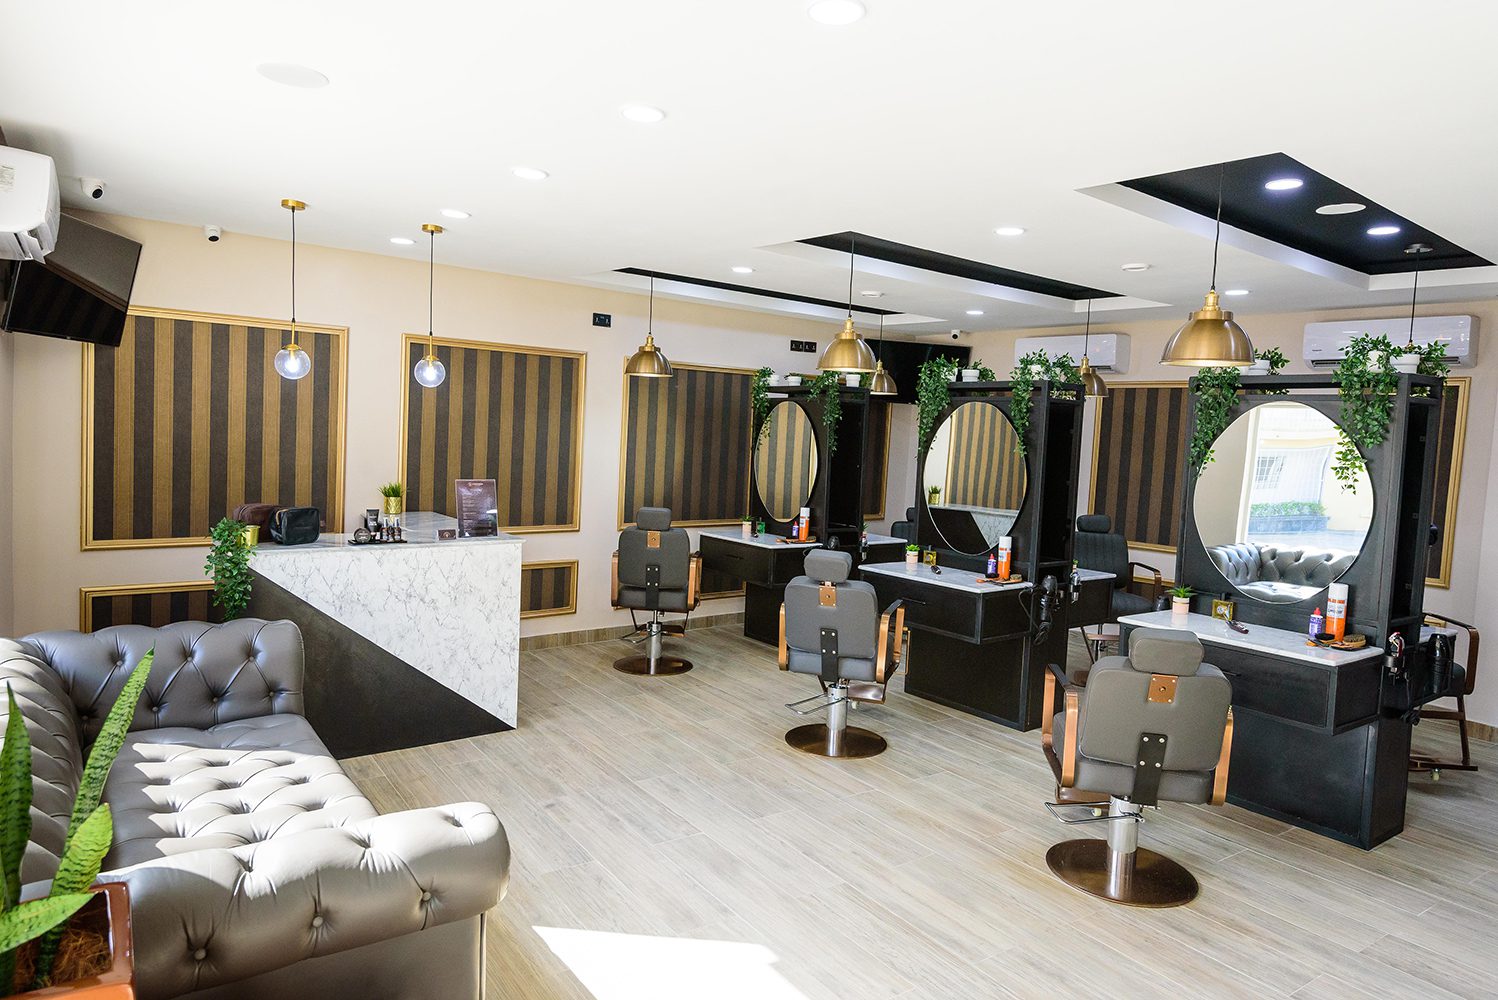 Groomed By Elereka – Luxury Barbershop in Ikoyi